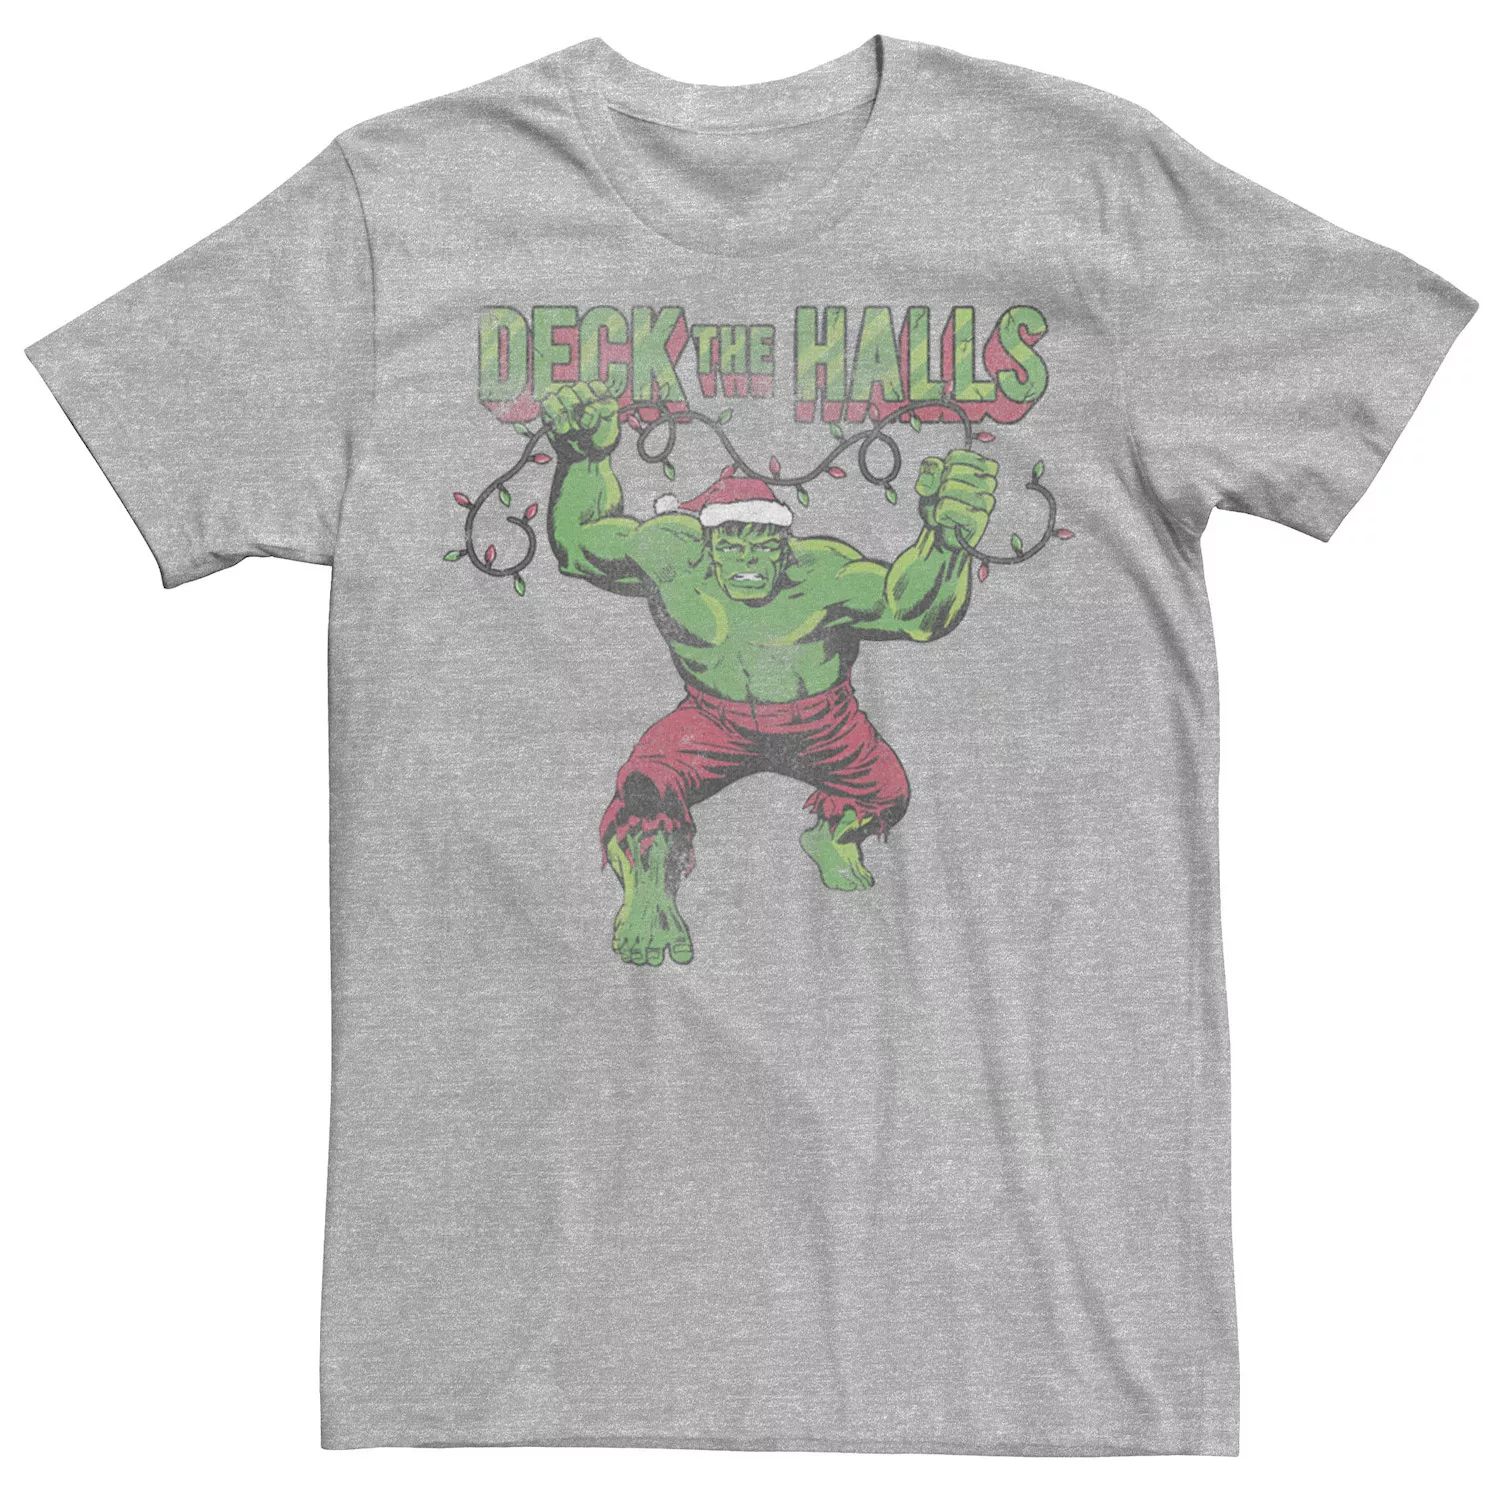 Мужская футболка с рисунком The Halls и портретом Халка Marvel